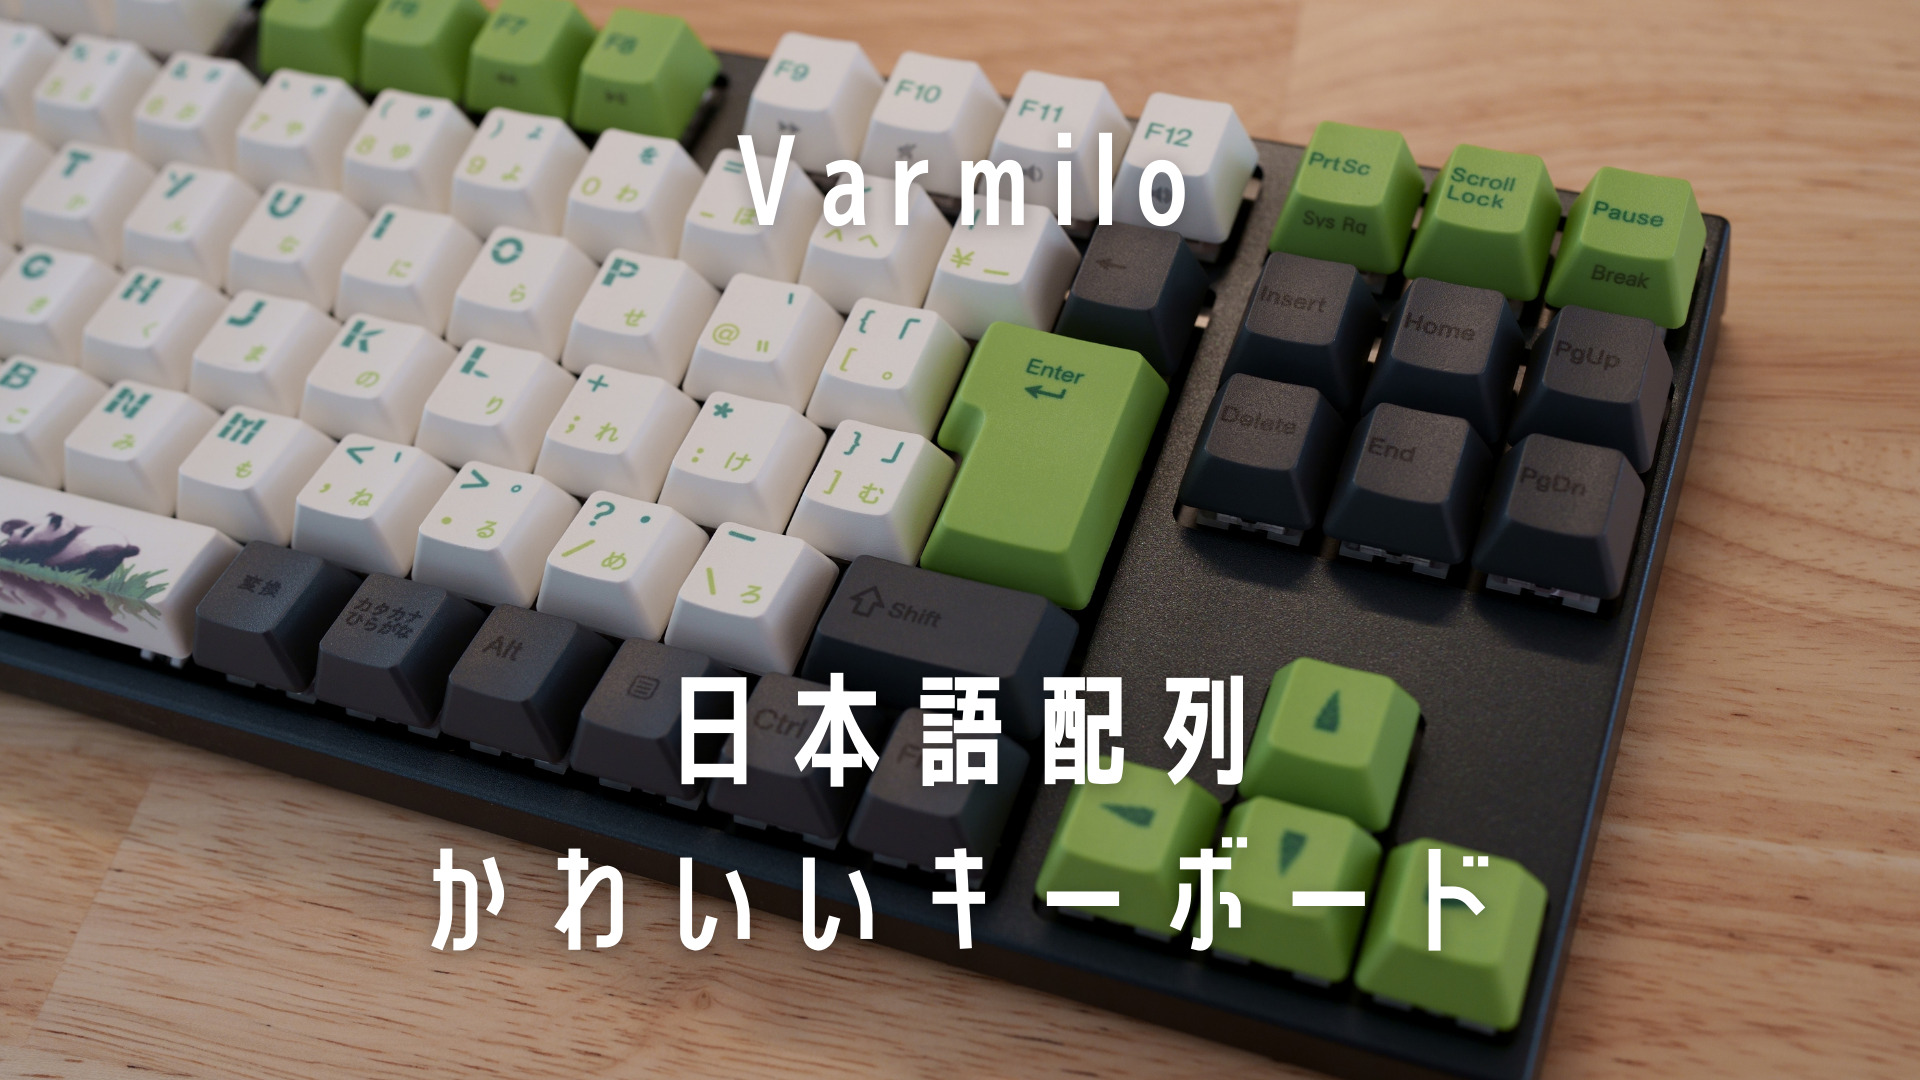 Varmilo(アミロ)カスタムキーボード＆Tai-Haoキーキャップ | Varmilo 